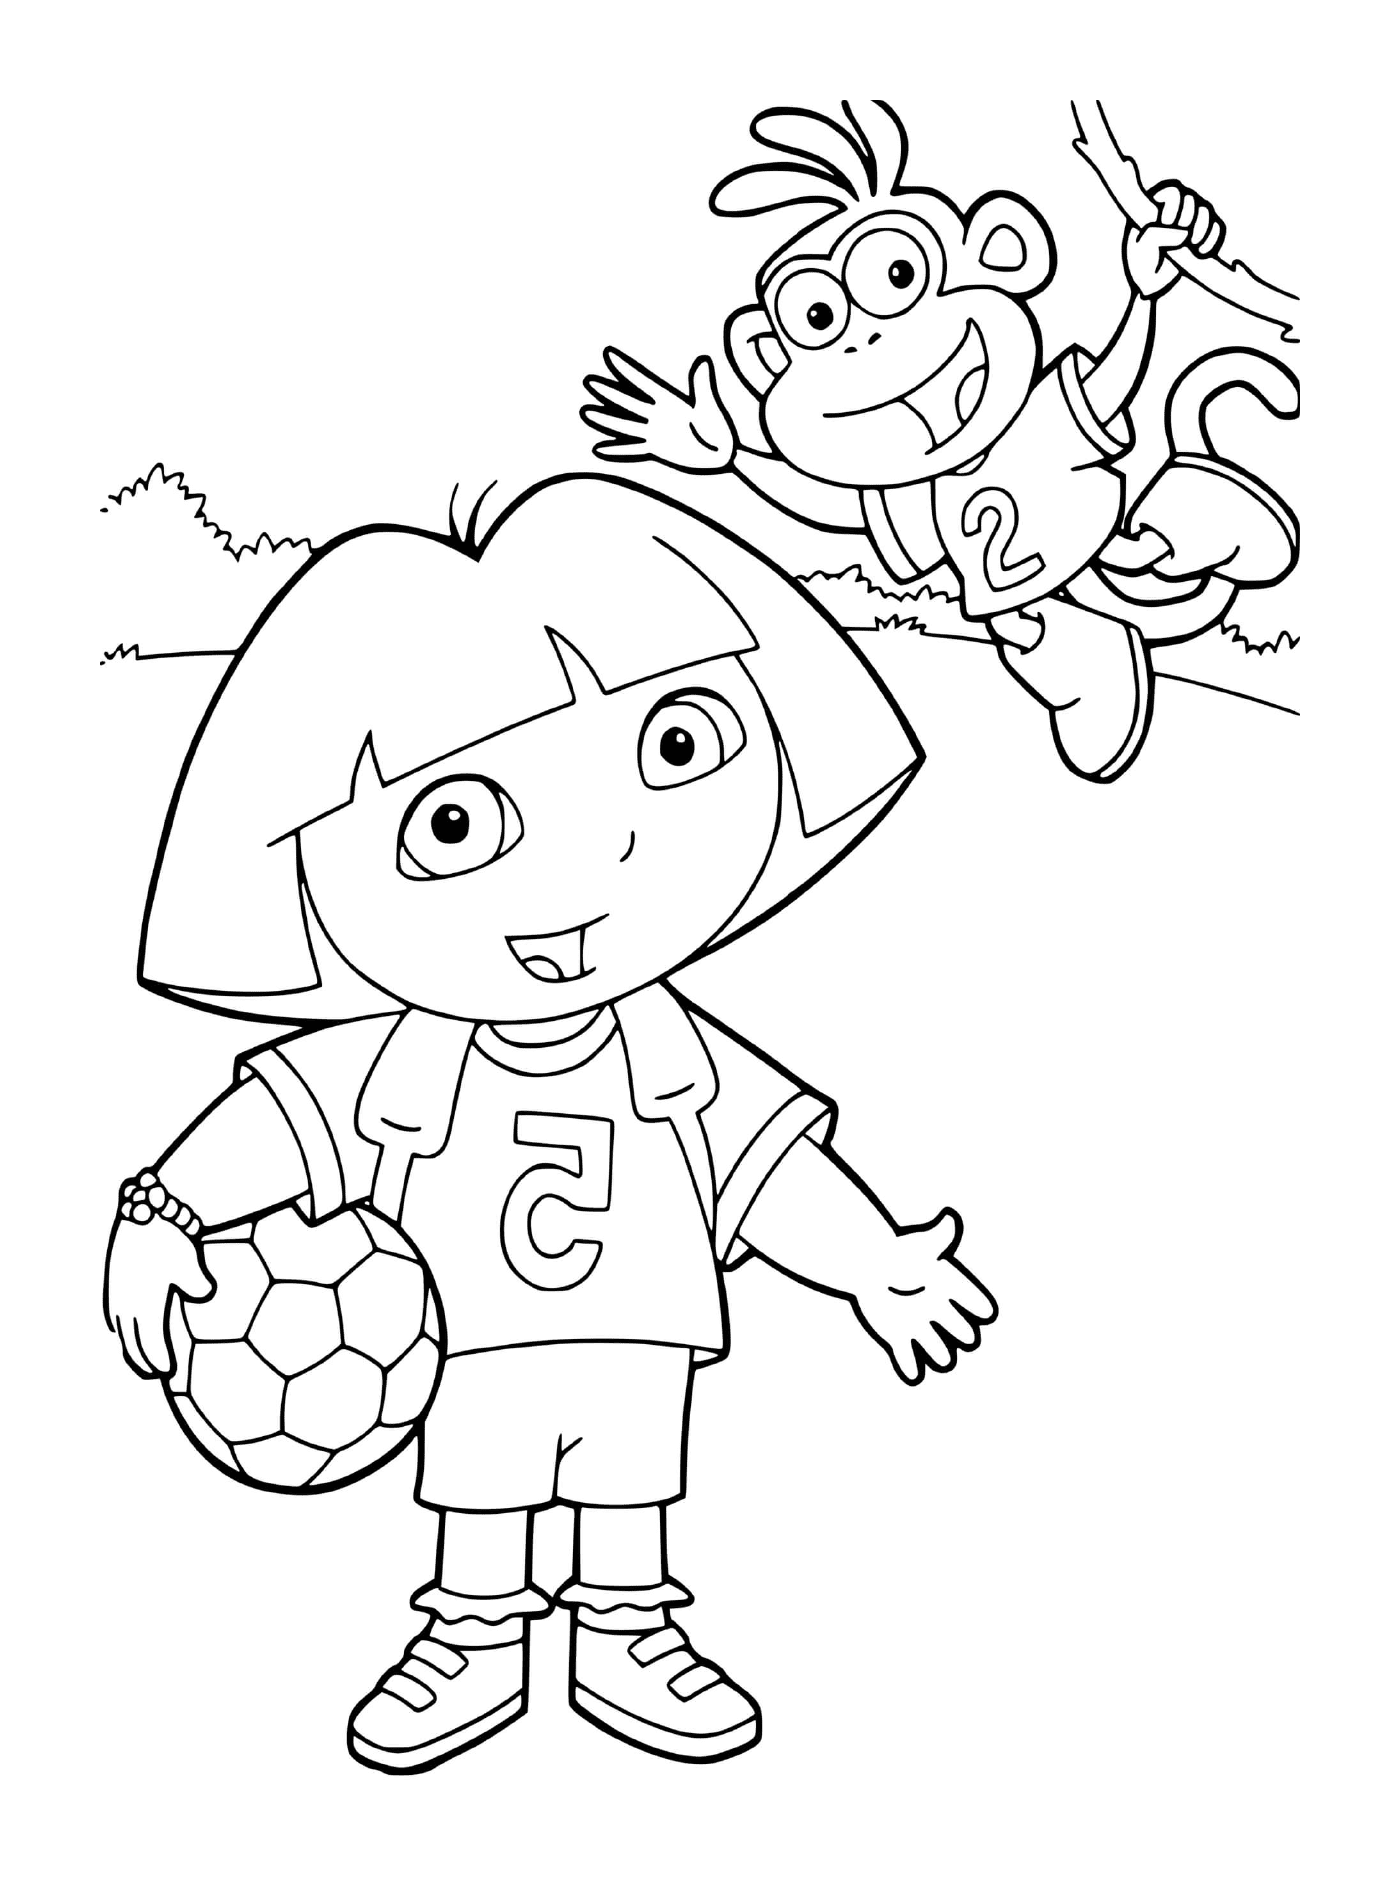  Dora spielt Fußball mit Babouche im Team 